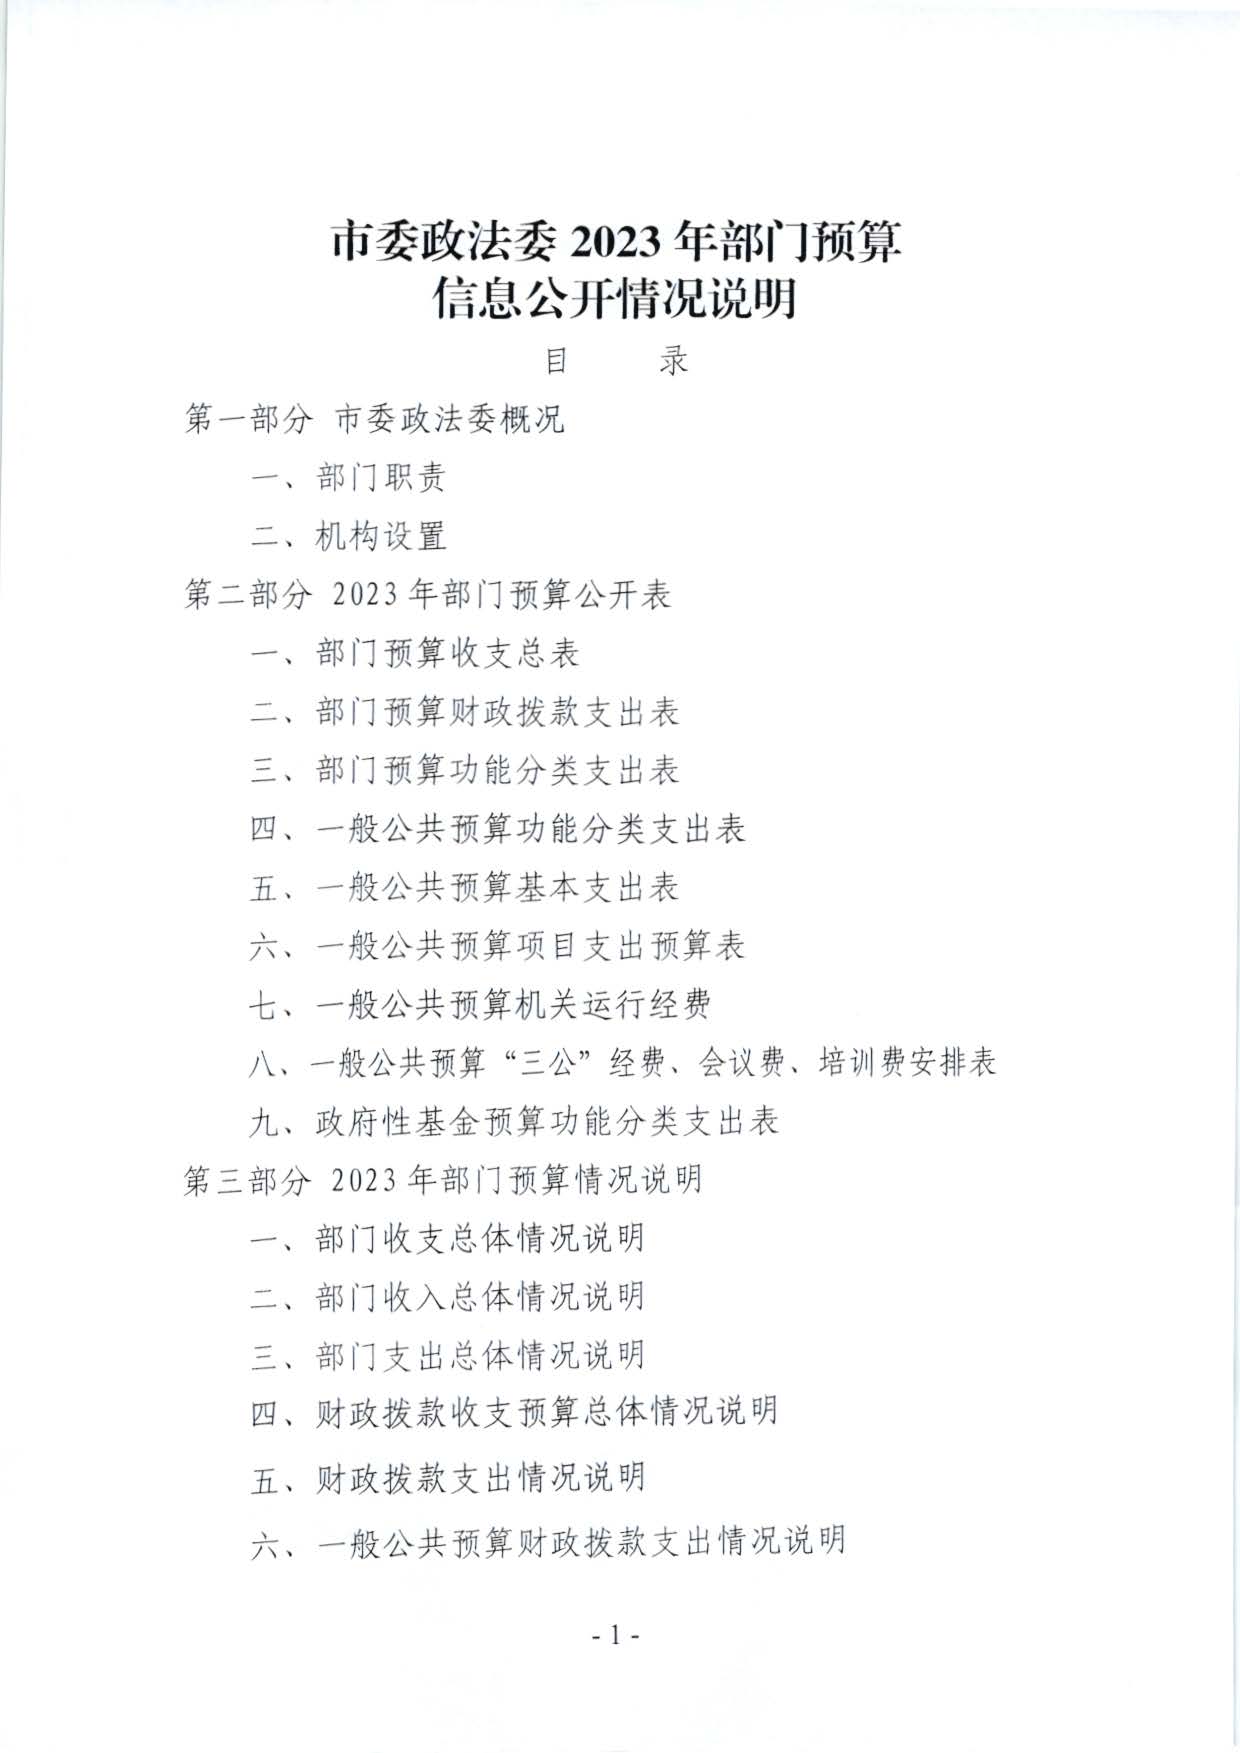 嘉峪关市委政法委2023年预算公开情况说明(1)_页面_01